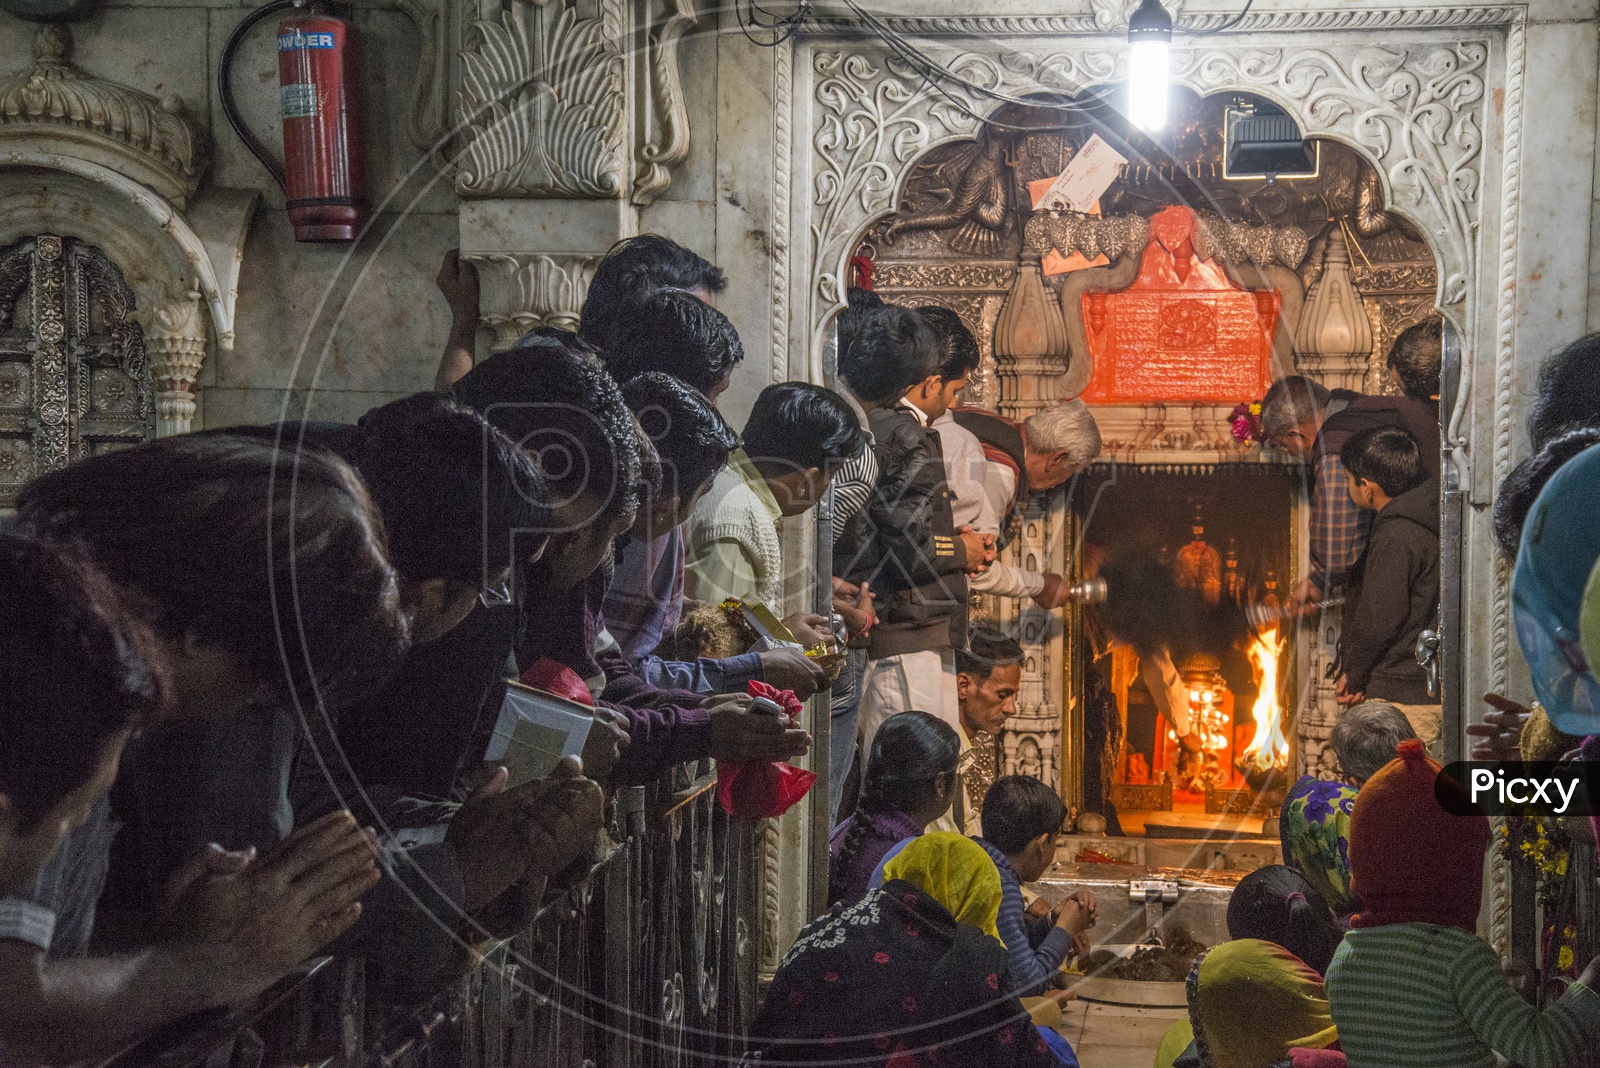 Devotees at Karni Mata Temple, Deshnoke, Bikaner